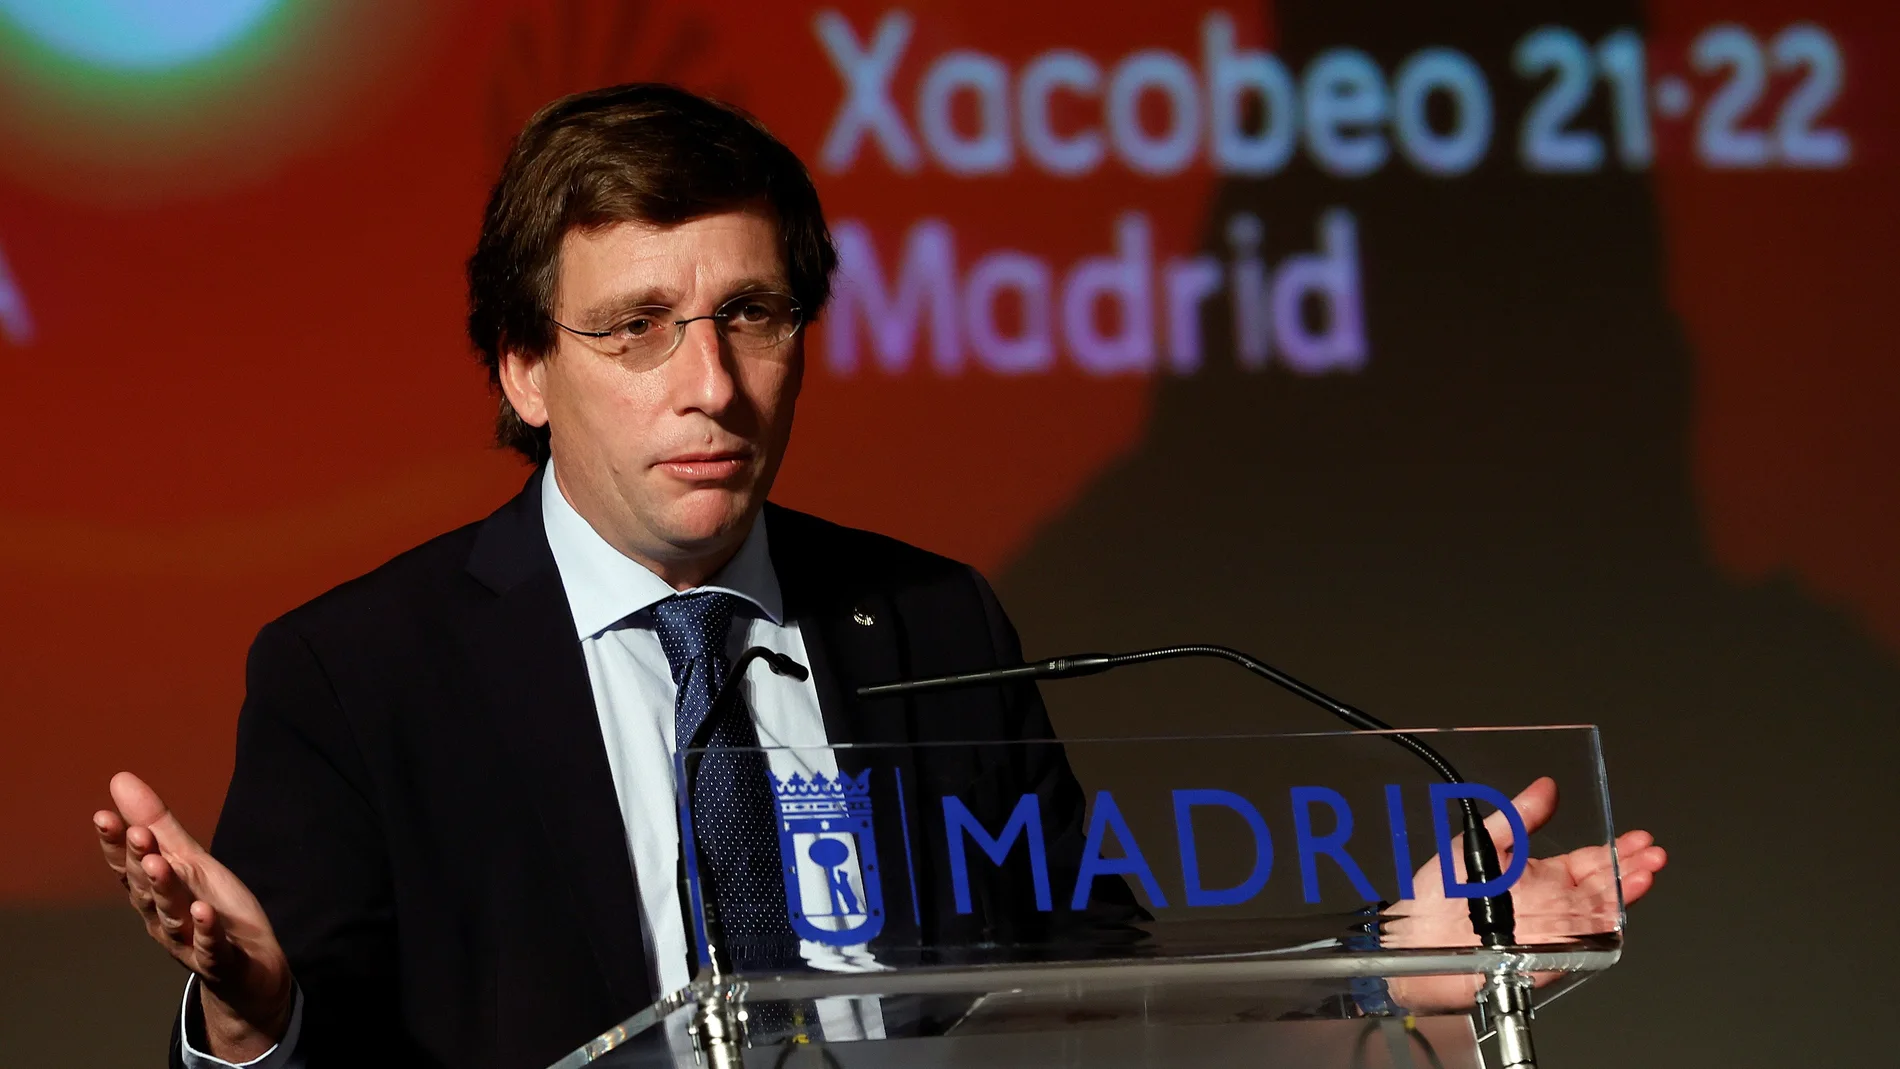 El alcalde de Madrid, José Luis Martínez-Almeida, participa en el acto de presentación de la Semana Xacobeo 21-22 este domingo